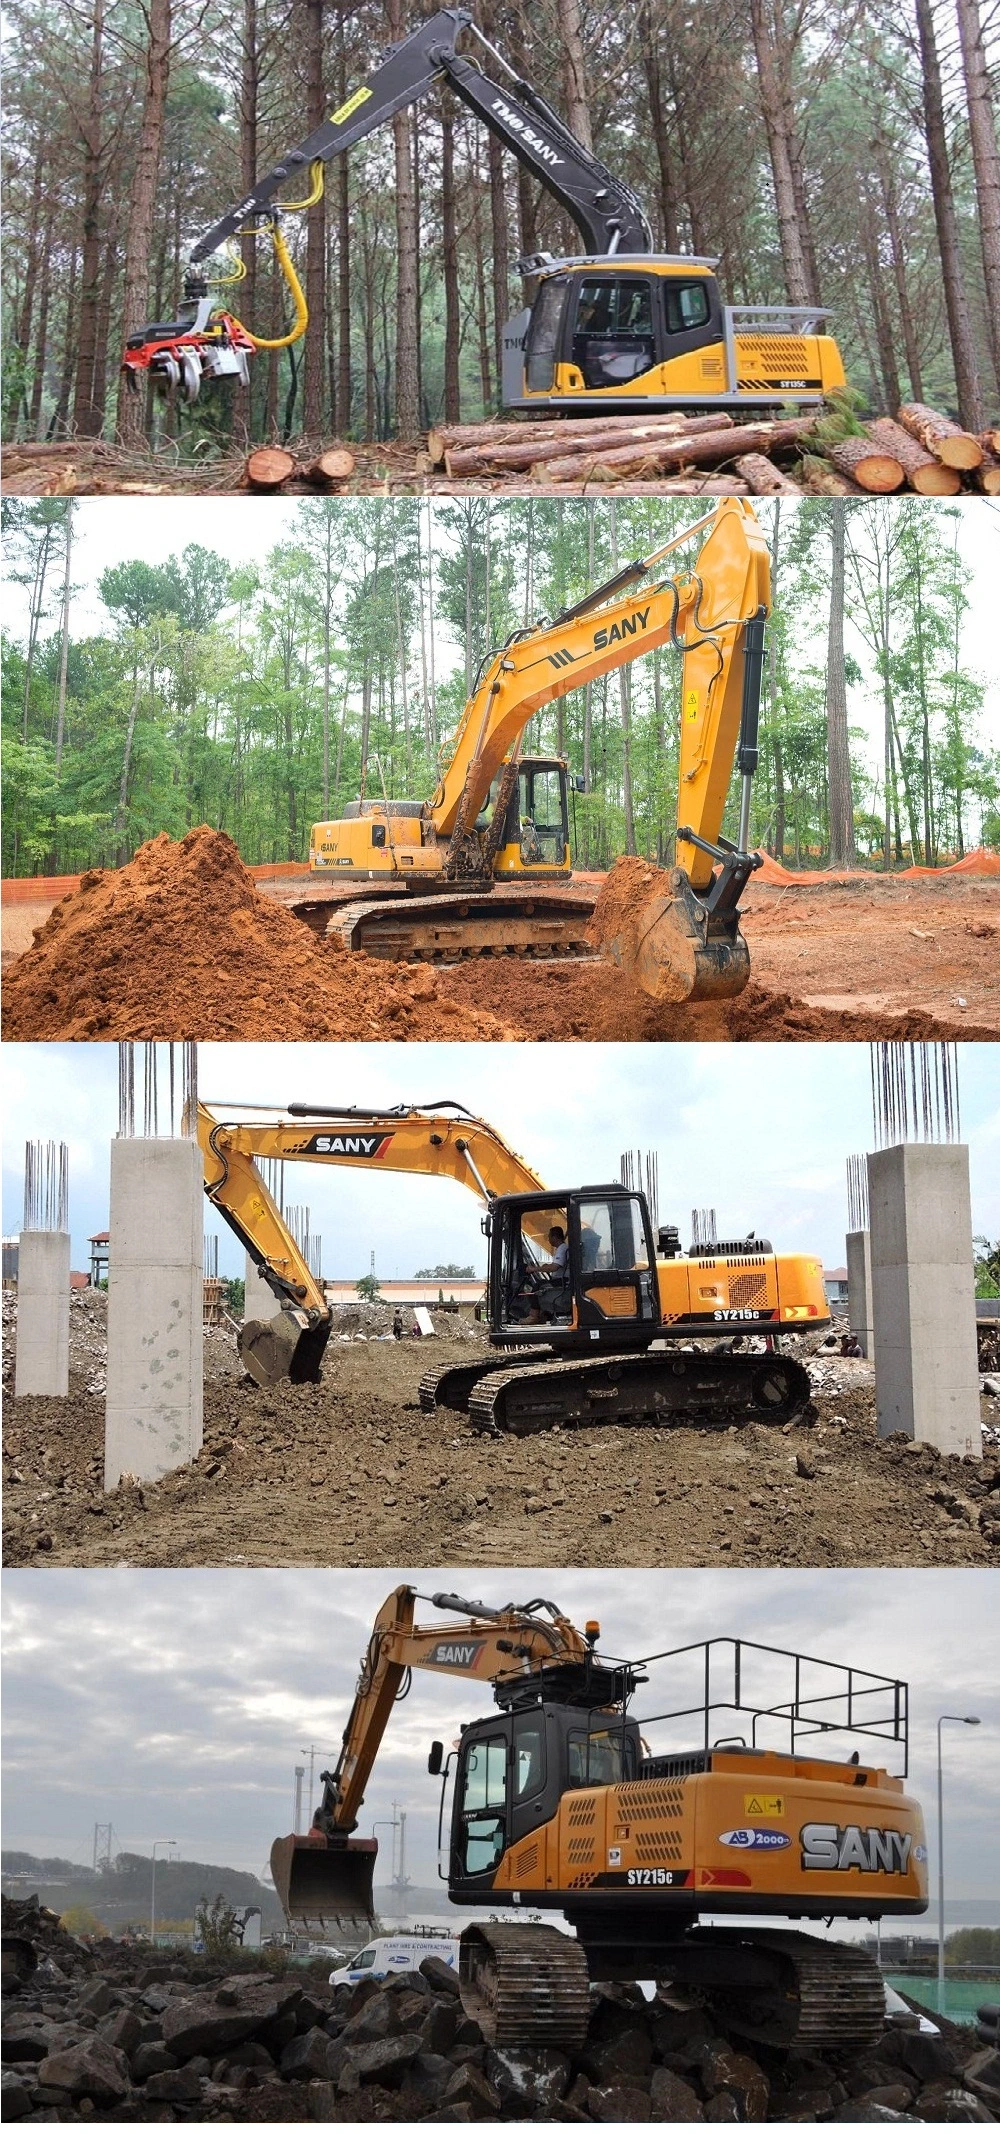 Sany Sy245h 25ton Construction Excavator Price of Sany Excavator